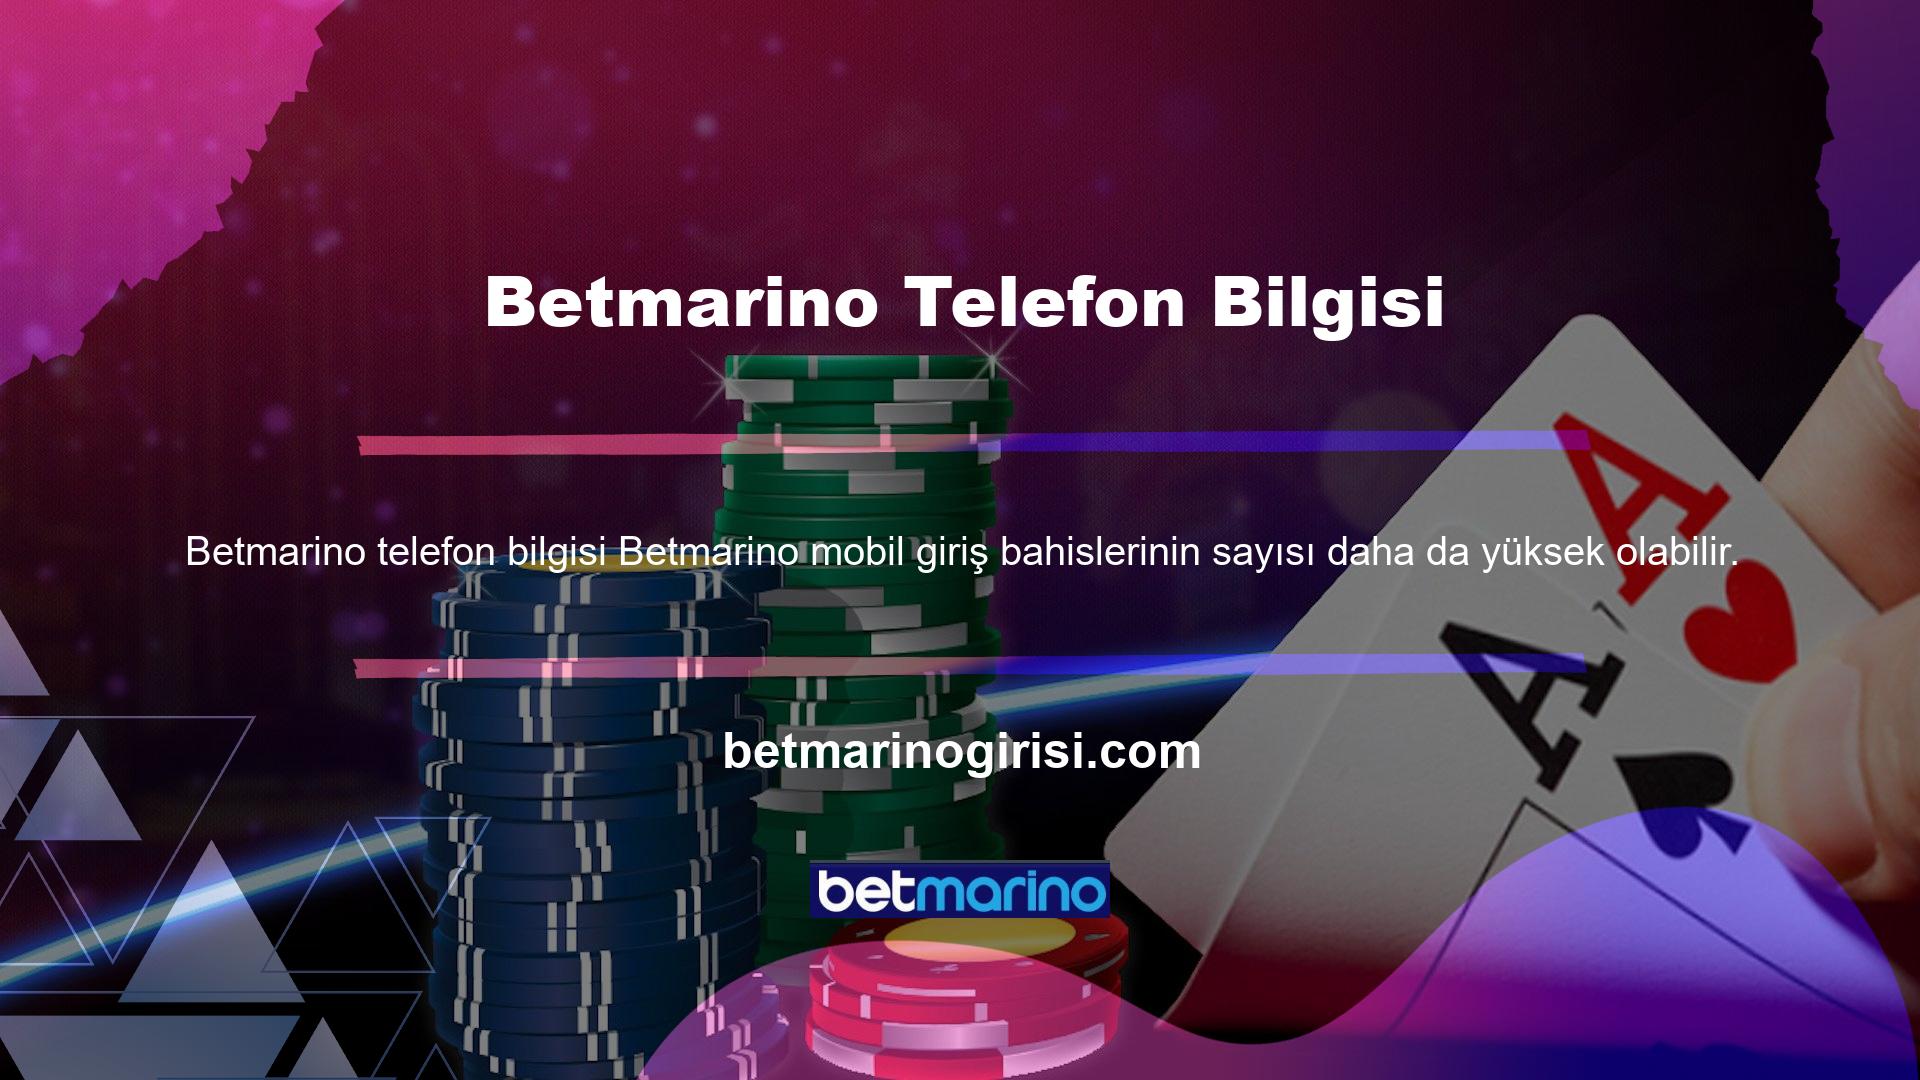 Betmarino telefon görüşmesiyle ilgili bilgiyi duyunca ağzını açık tutuyor! Betmarino bir diğer özelliği ise kayıtlı olmayan müşterilere bile canlı yardım sunabilmesidir